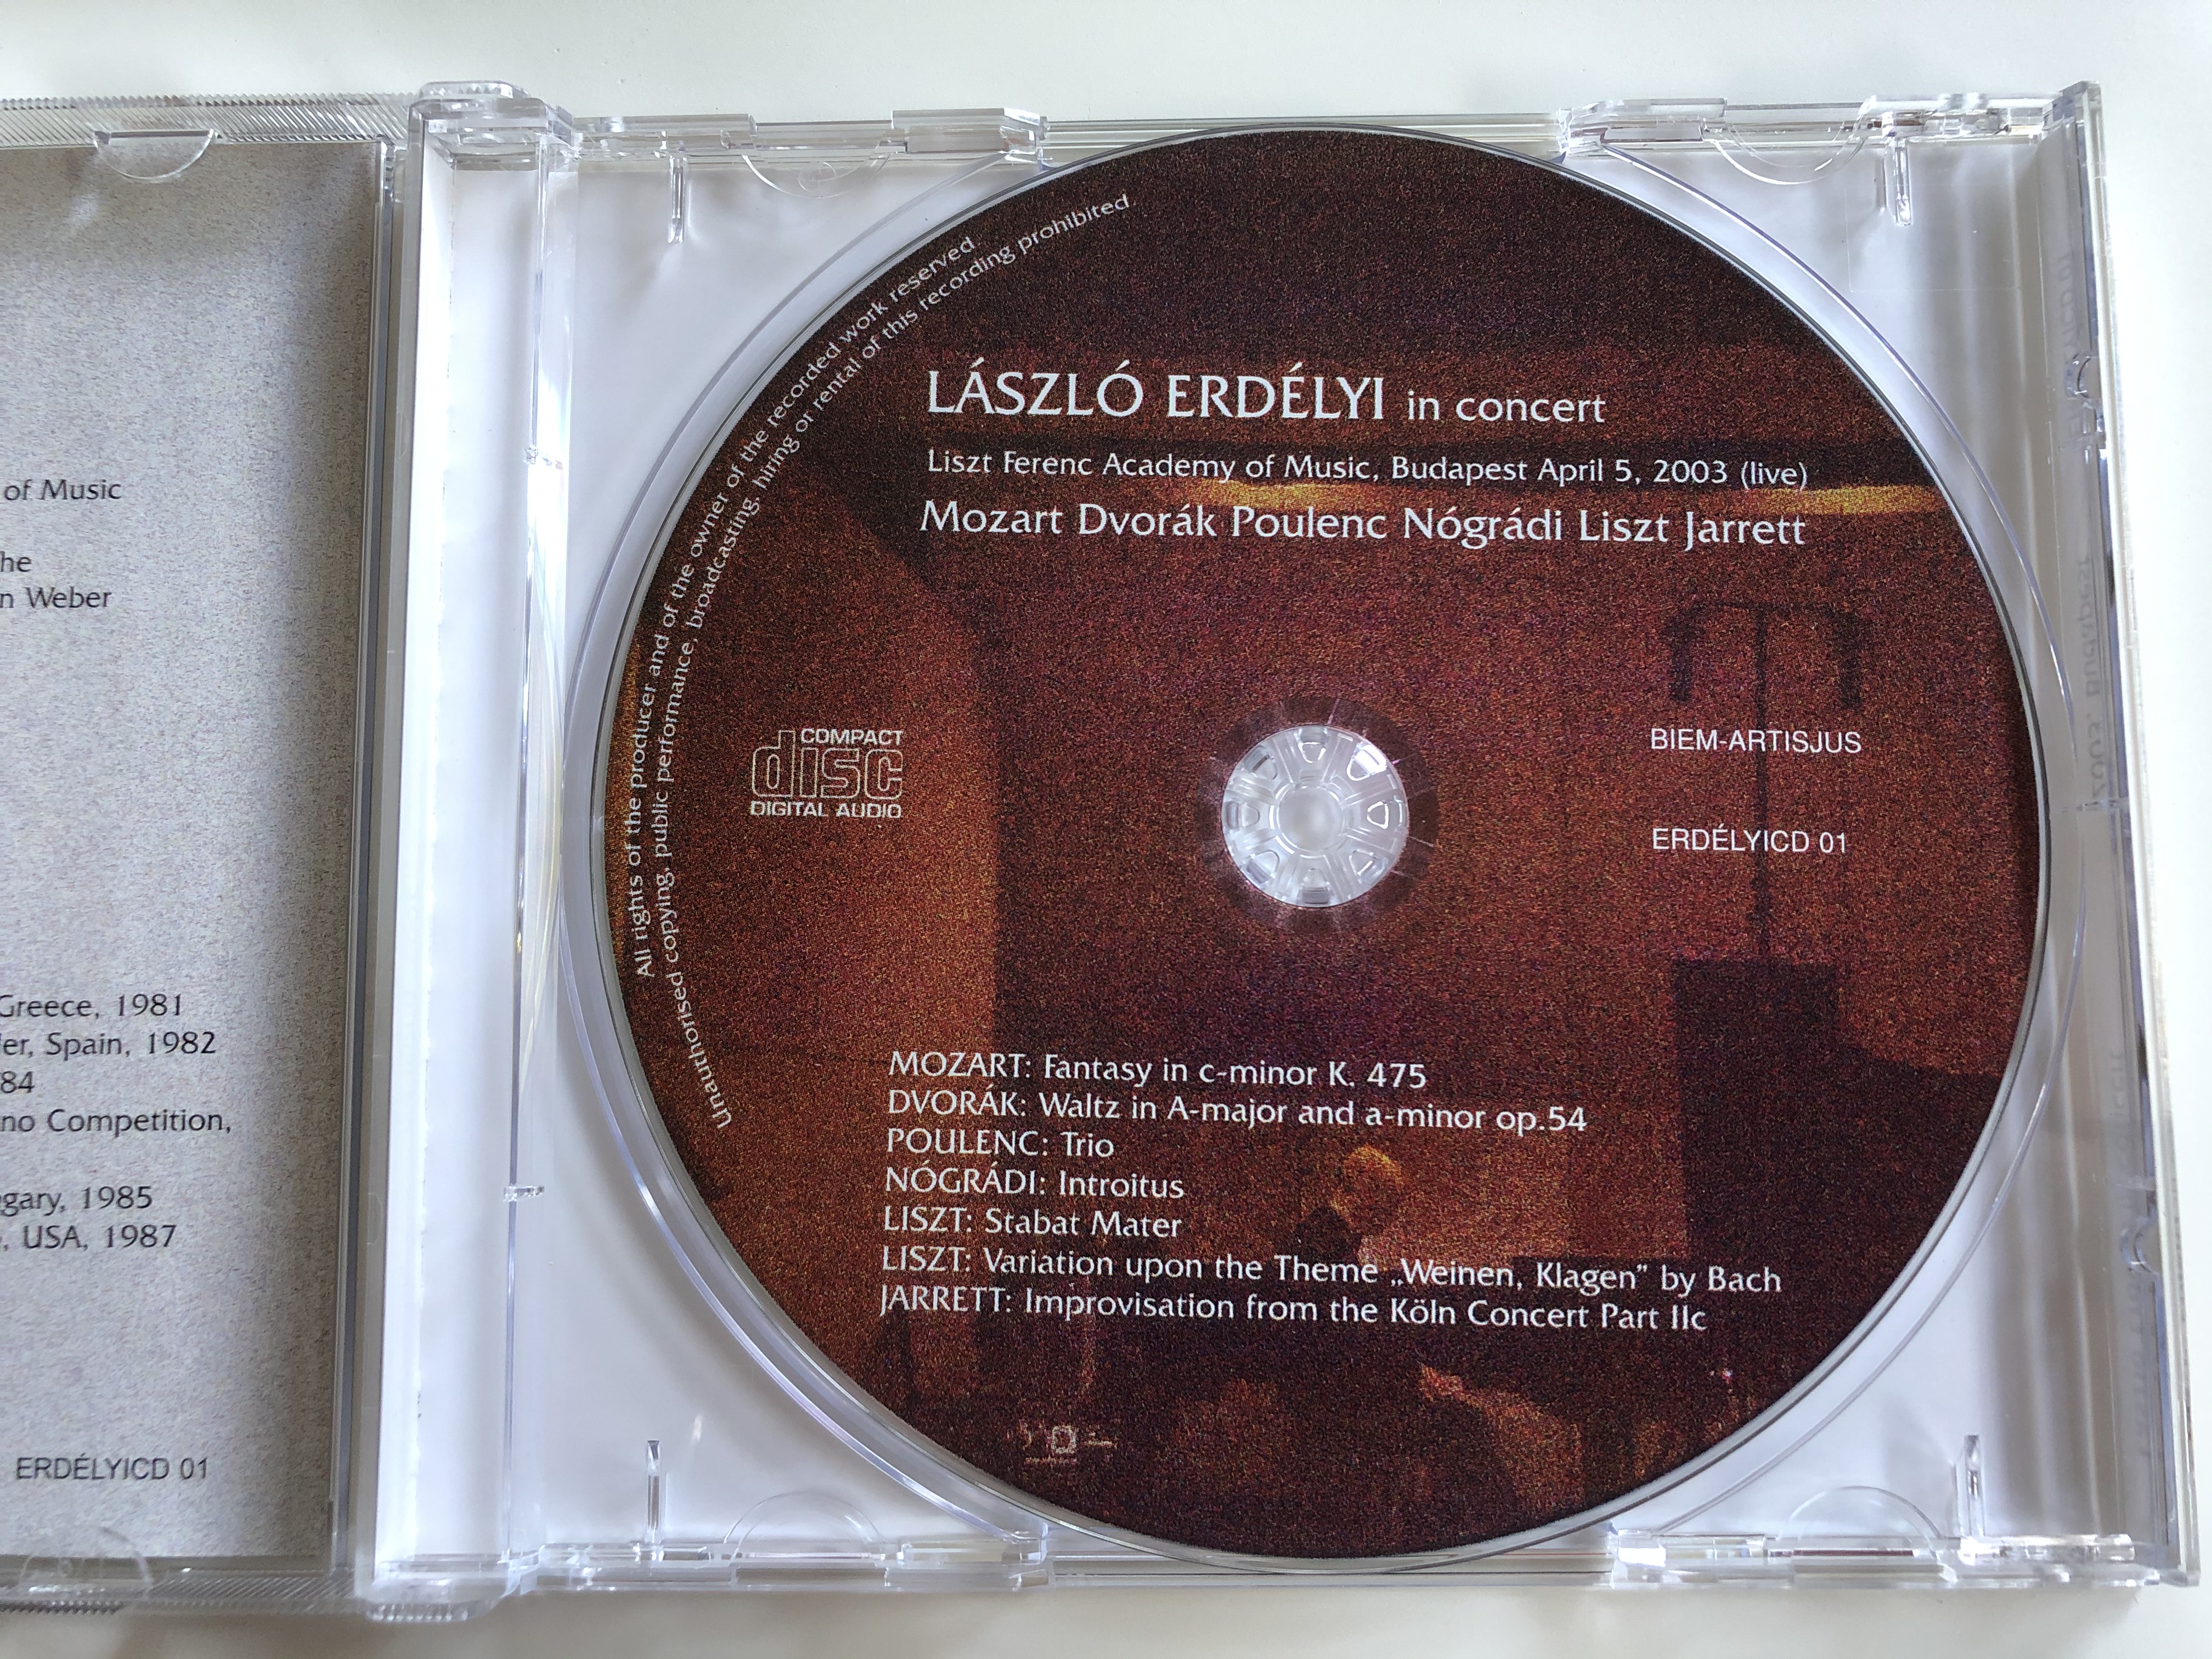 laszlo-erdelyi-in-concert-liszt-ferenc-academy-of-music-budapest-april-5-2003-live-mozart-dvorak-poulenc-nogradi-liszt-jarrett-erdelyi-audio-cd-erdelyicd-01-4-.jpg